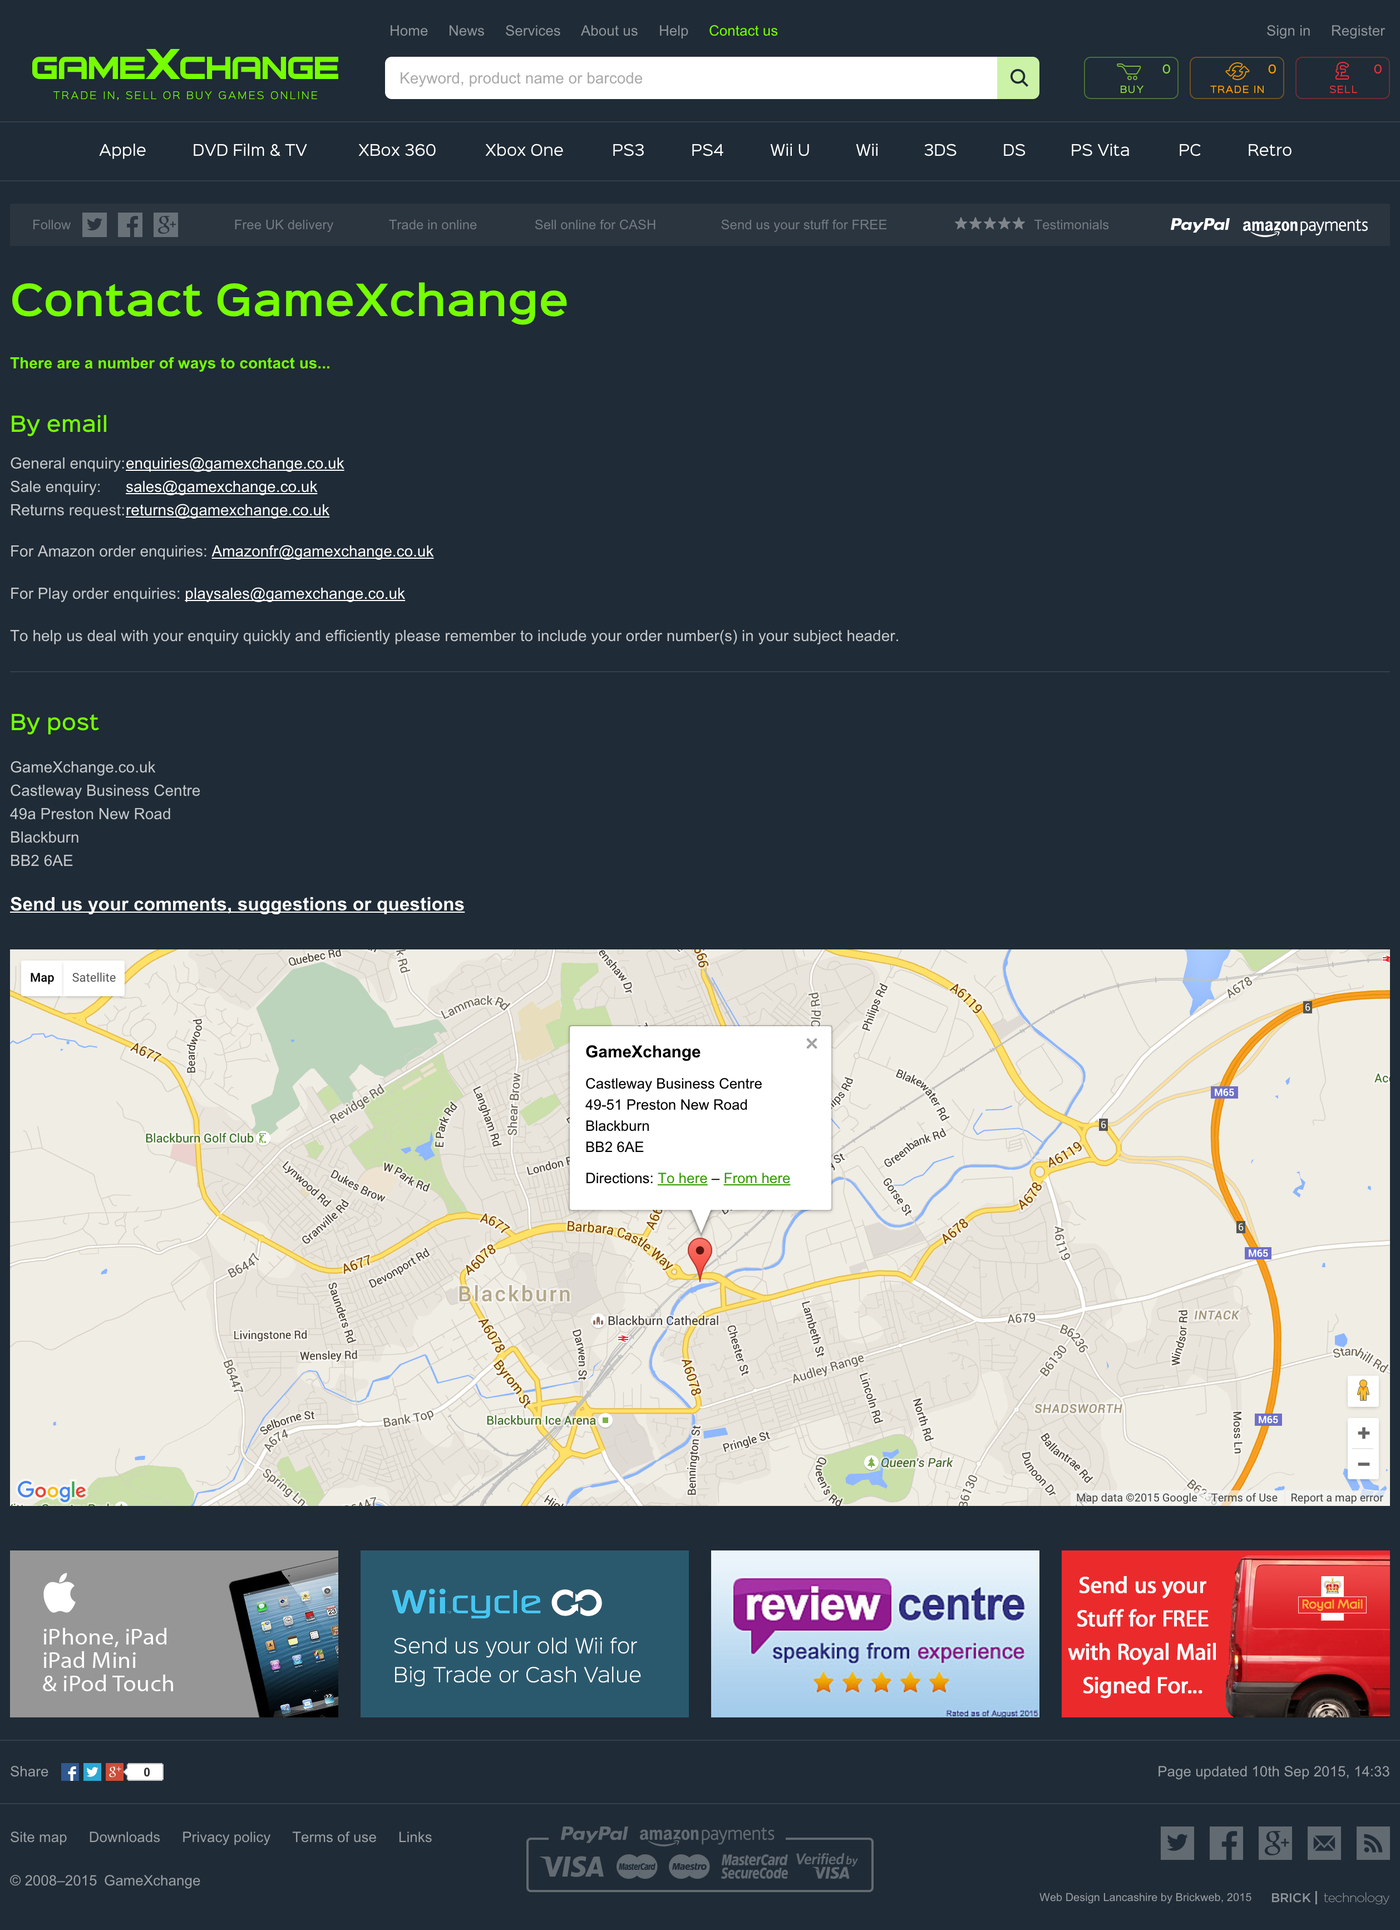 GameXchange Contact us